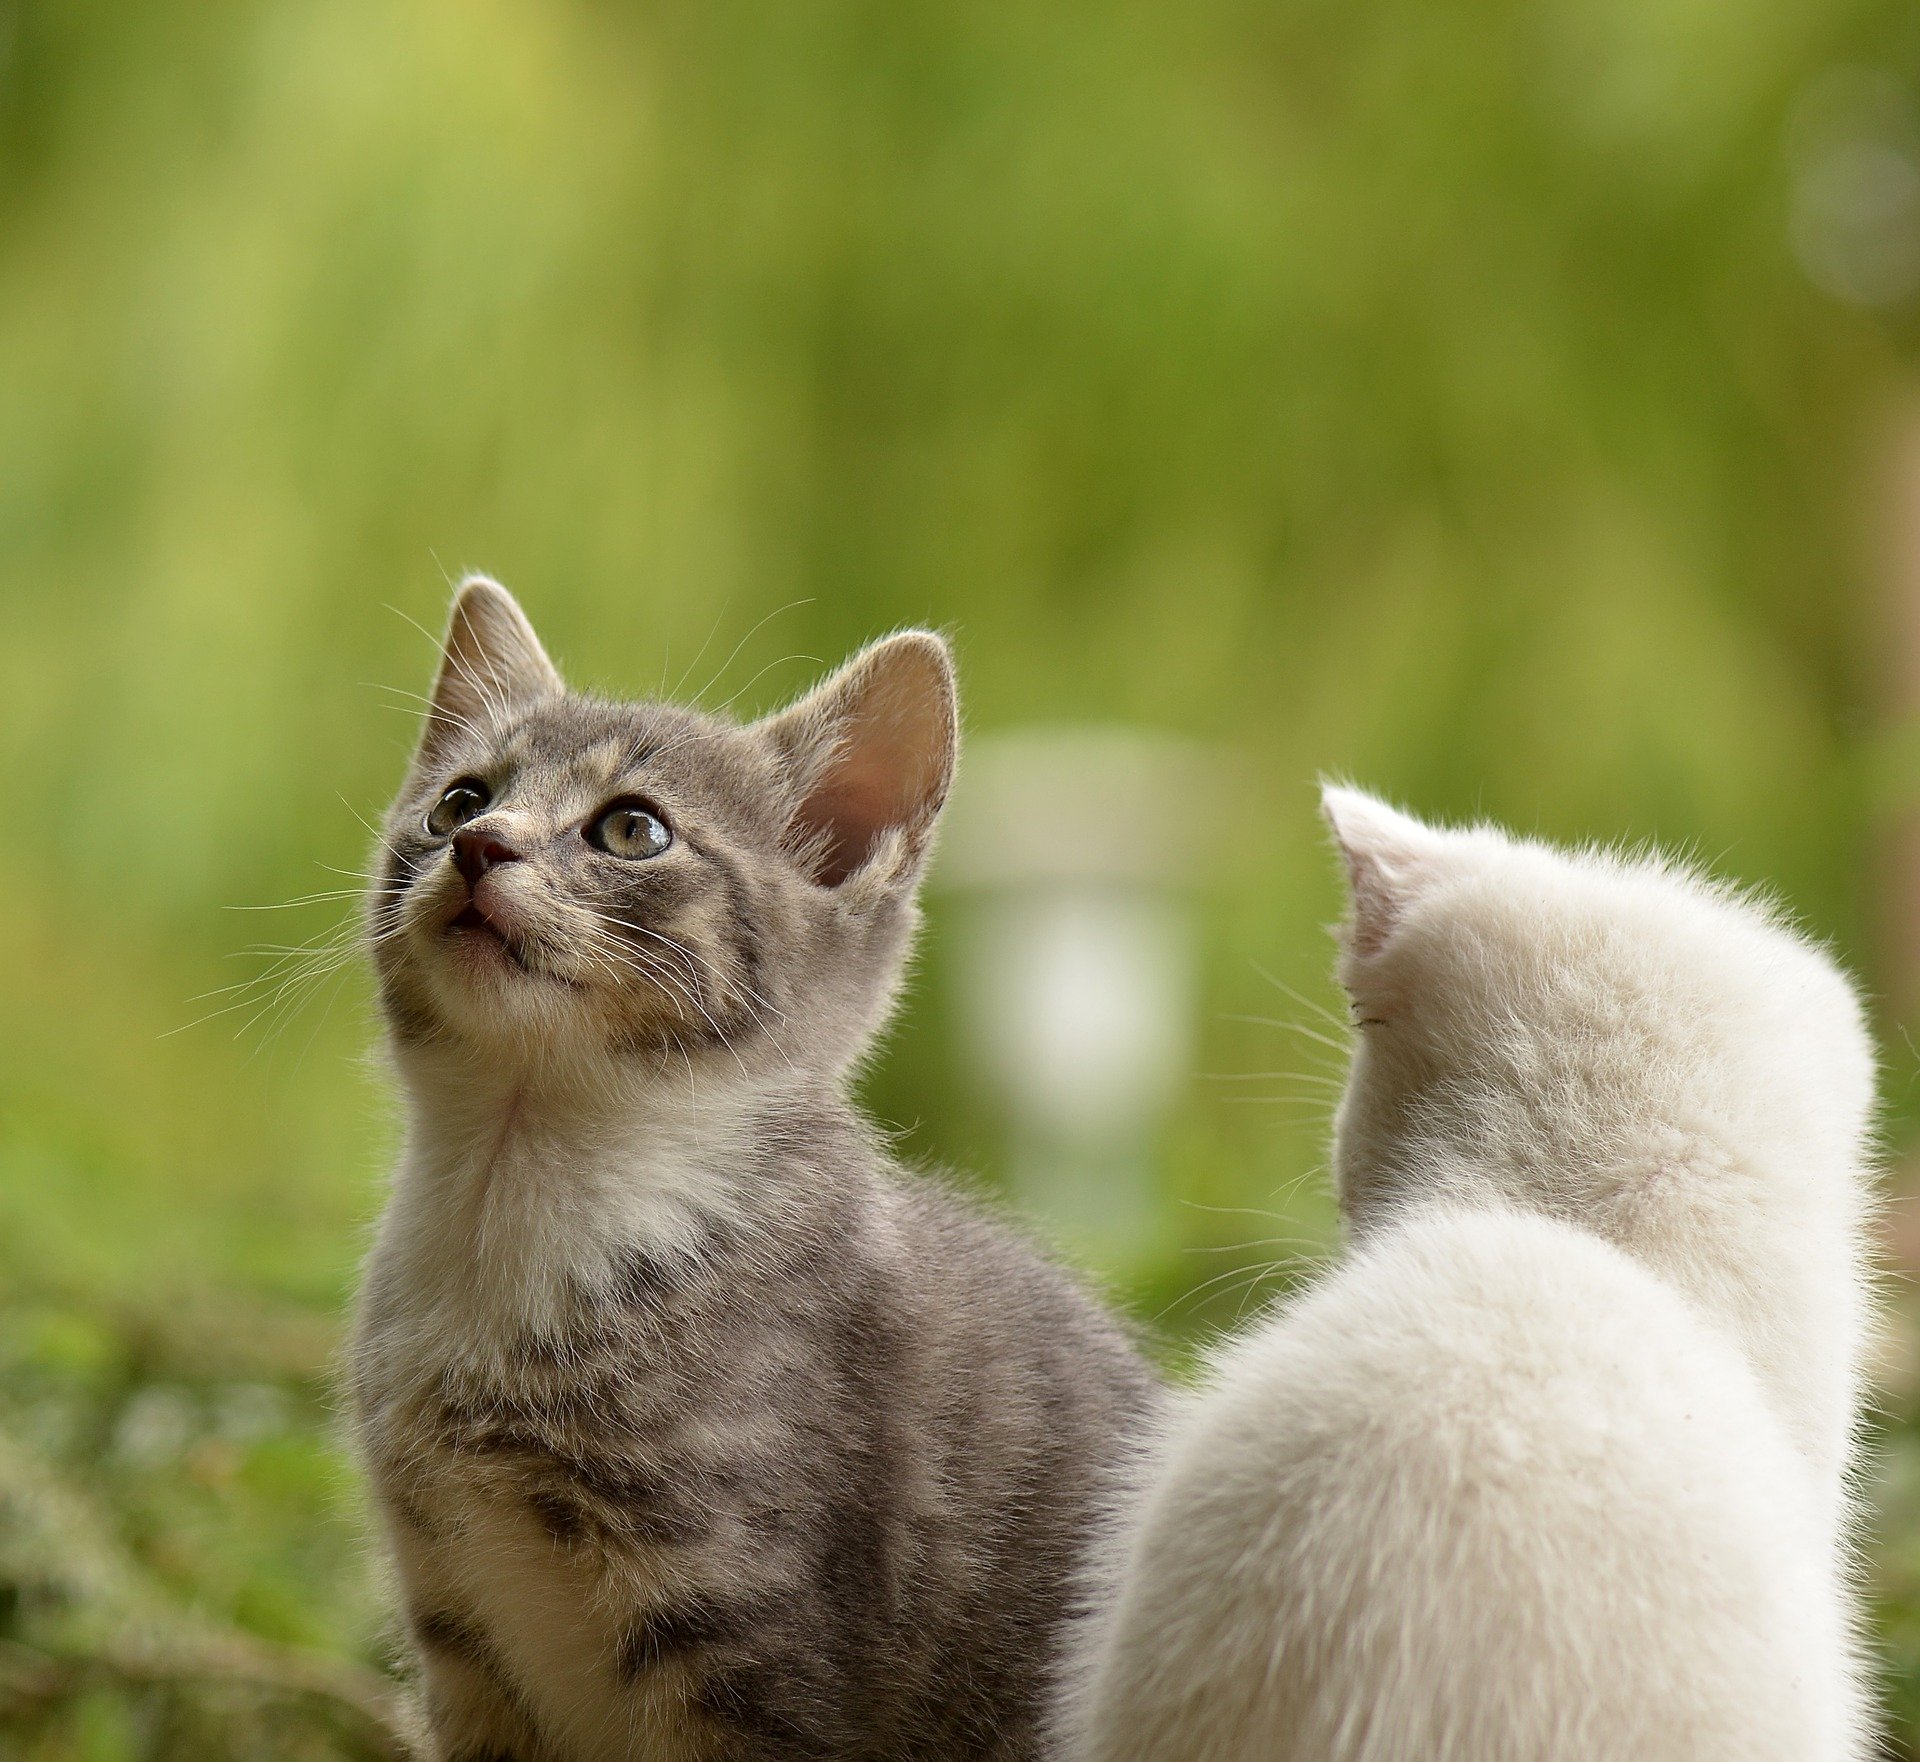 quiz z hiszpańskiego zwierzęta animales numeros test wiedzy łatwy kot gato